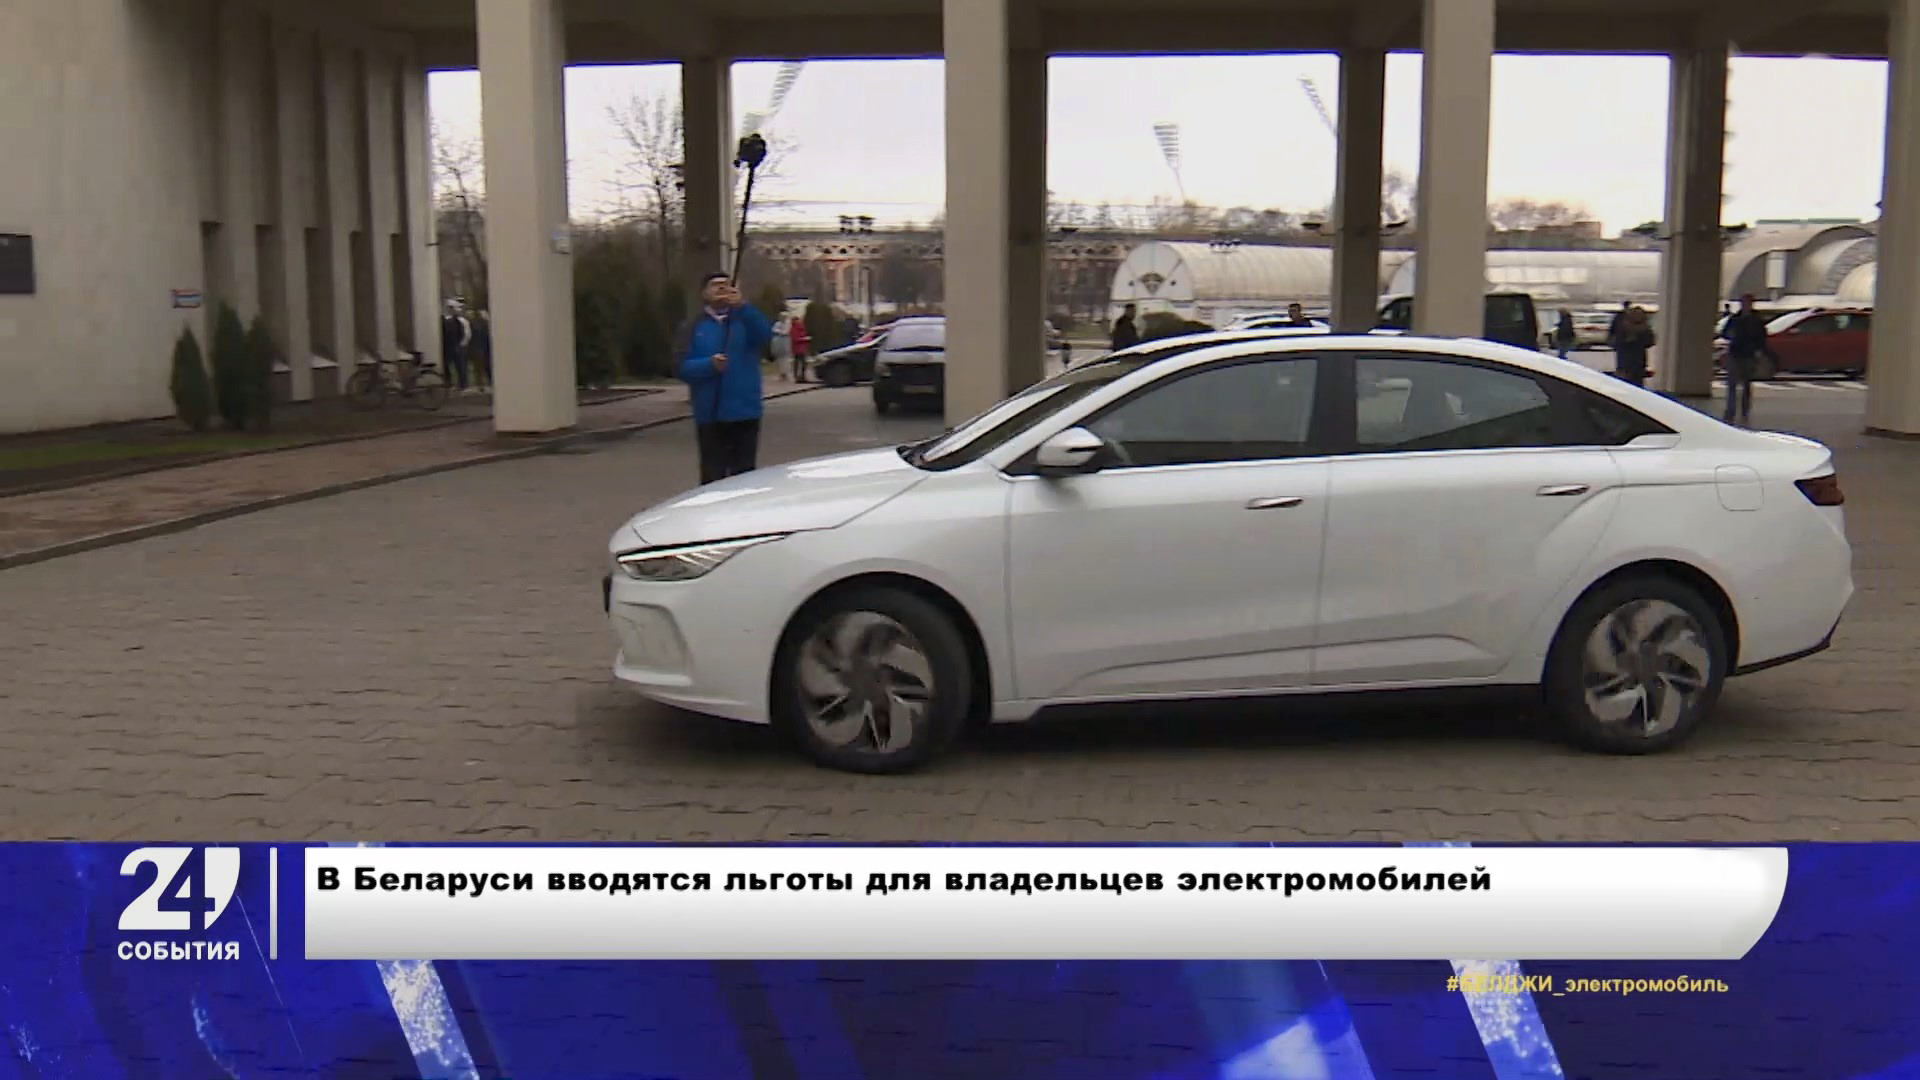 В Беларуси вводятся льготы для водителей электромобилей